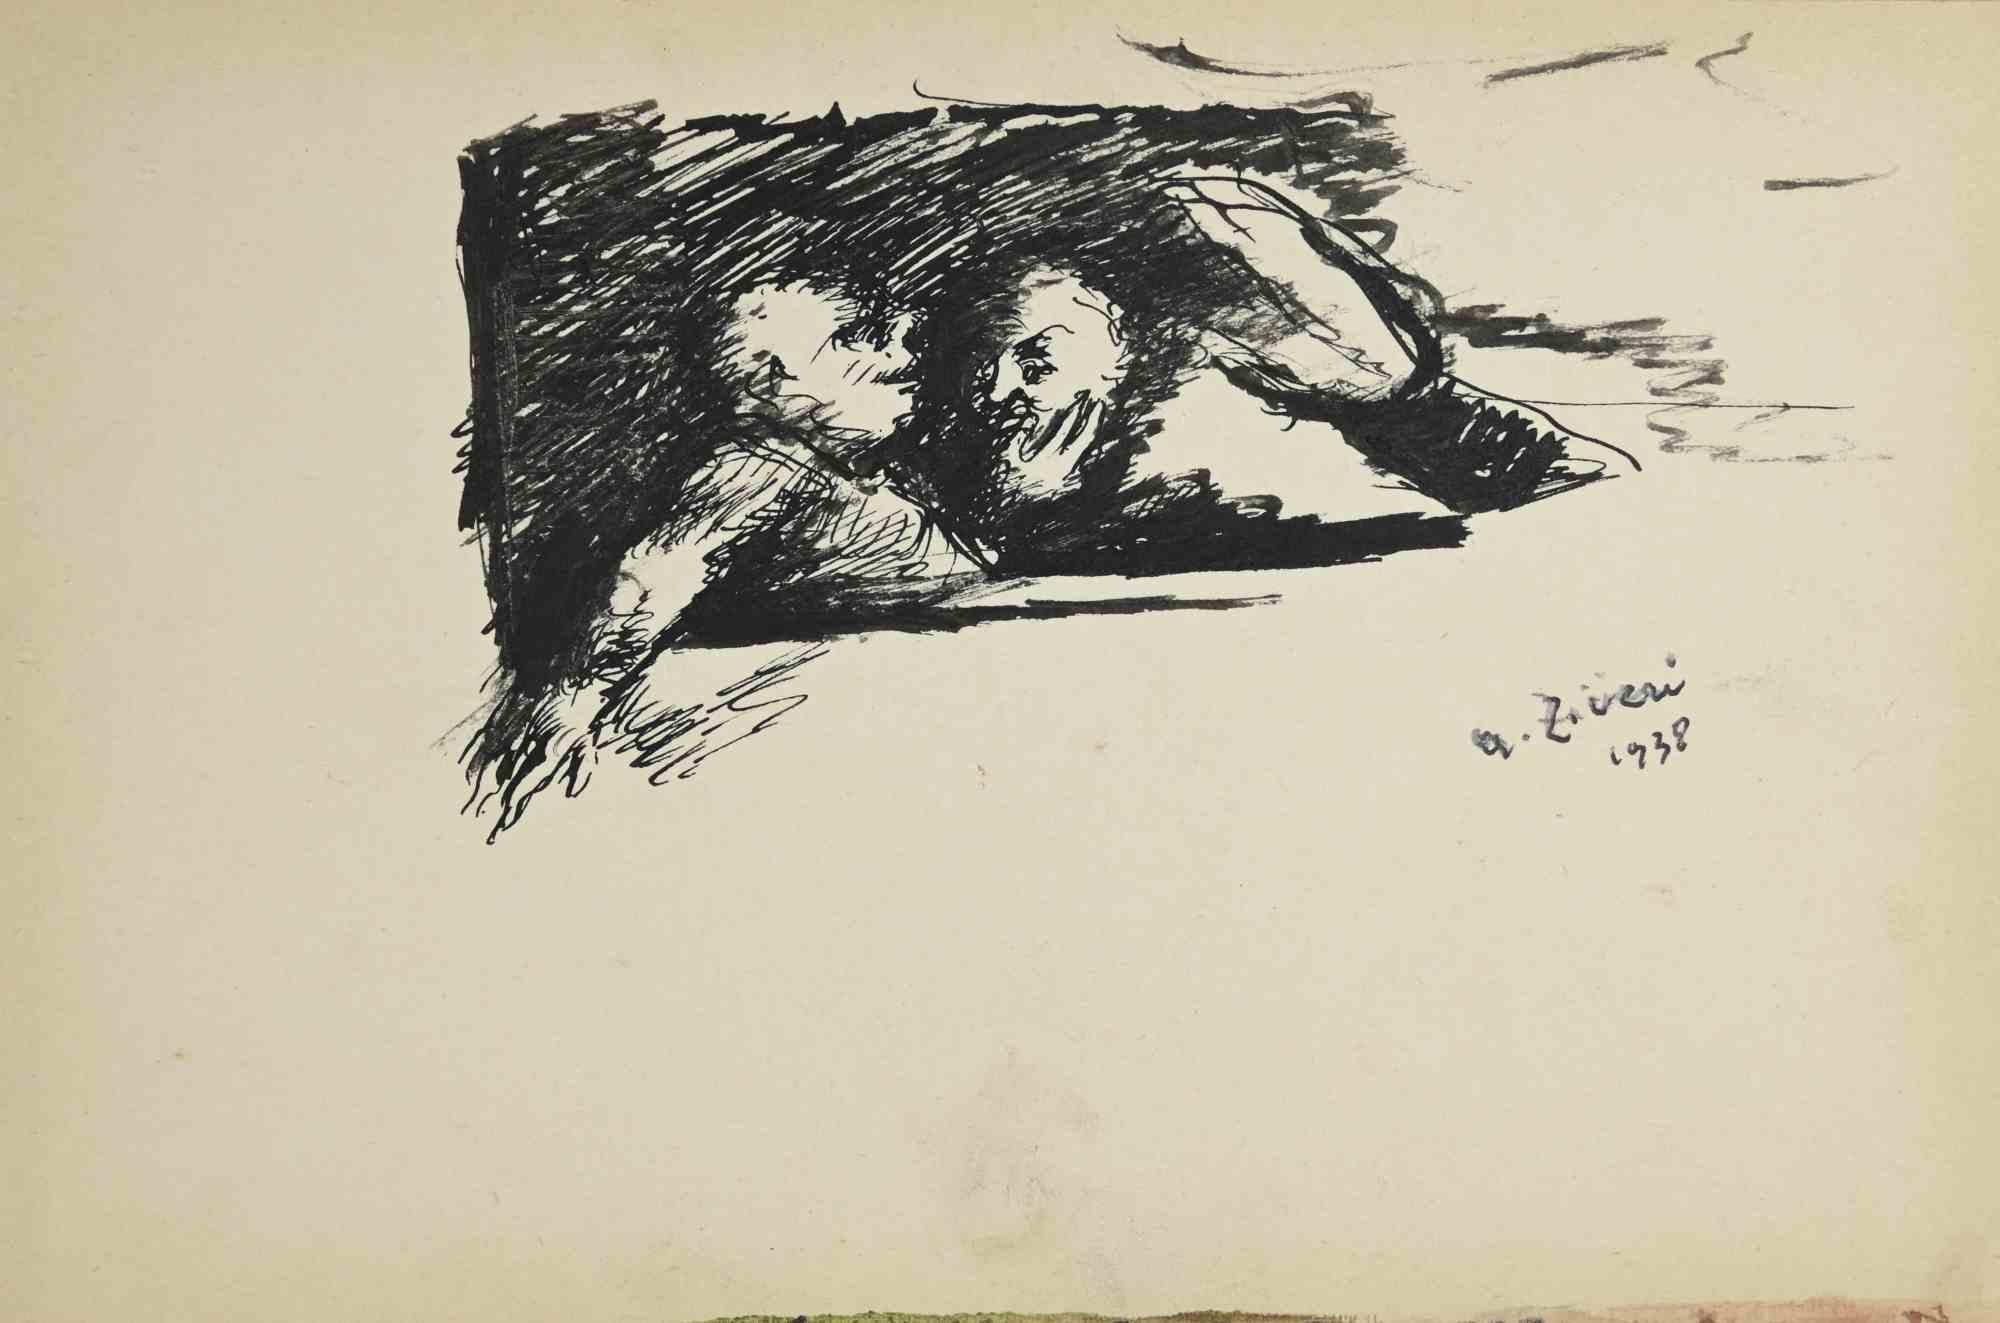 Die Diskussion ist eine Zeichnung von Alberto Ziveri aus dem Jahr 1938.

Tinte auf Papier.

Handsigniert und datiert.

In gutem Zustand mit leichten Stockflecken.

Das Kunstwerk wird durch geschickte Striche meisterhaft dargestellt.

Alberto Ziveri